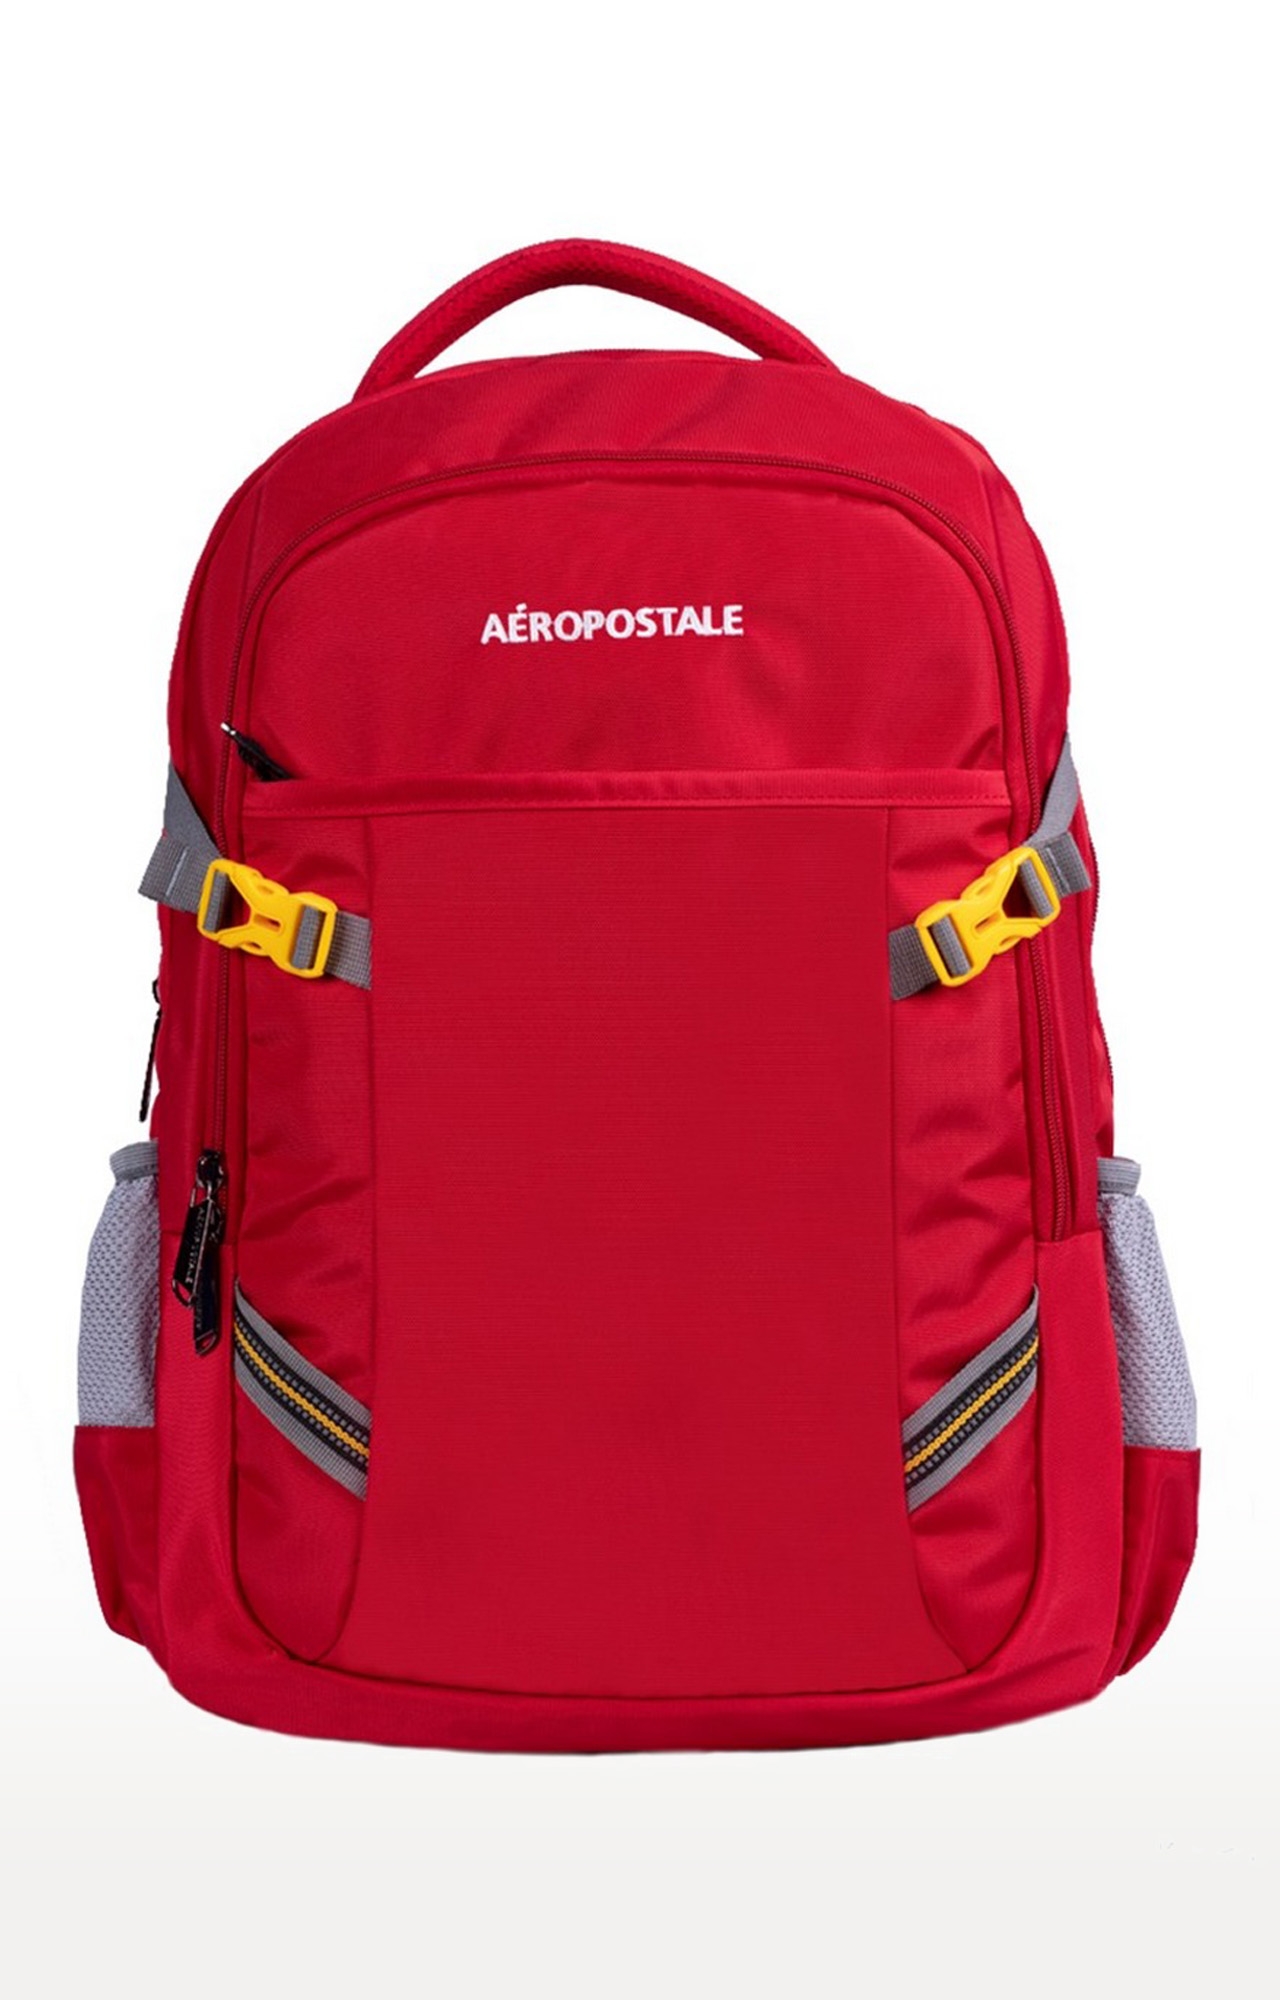 Aeropostale Backpack With Soft Adjustable Straps Bag